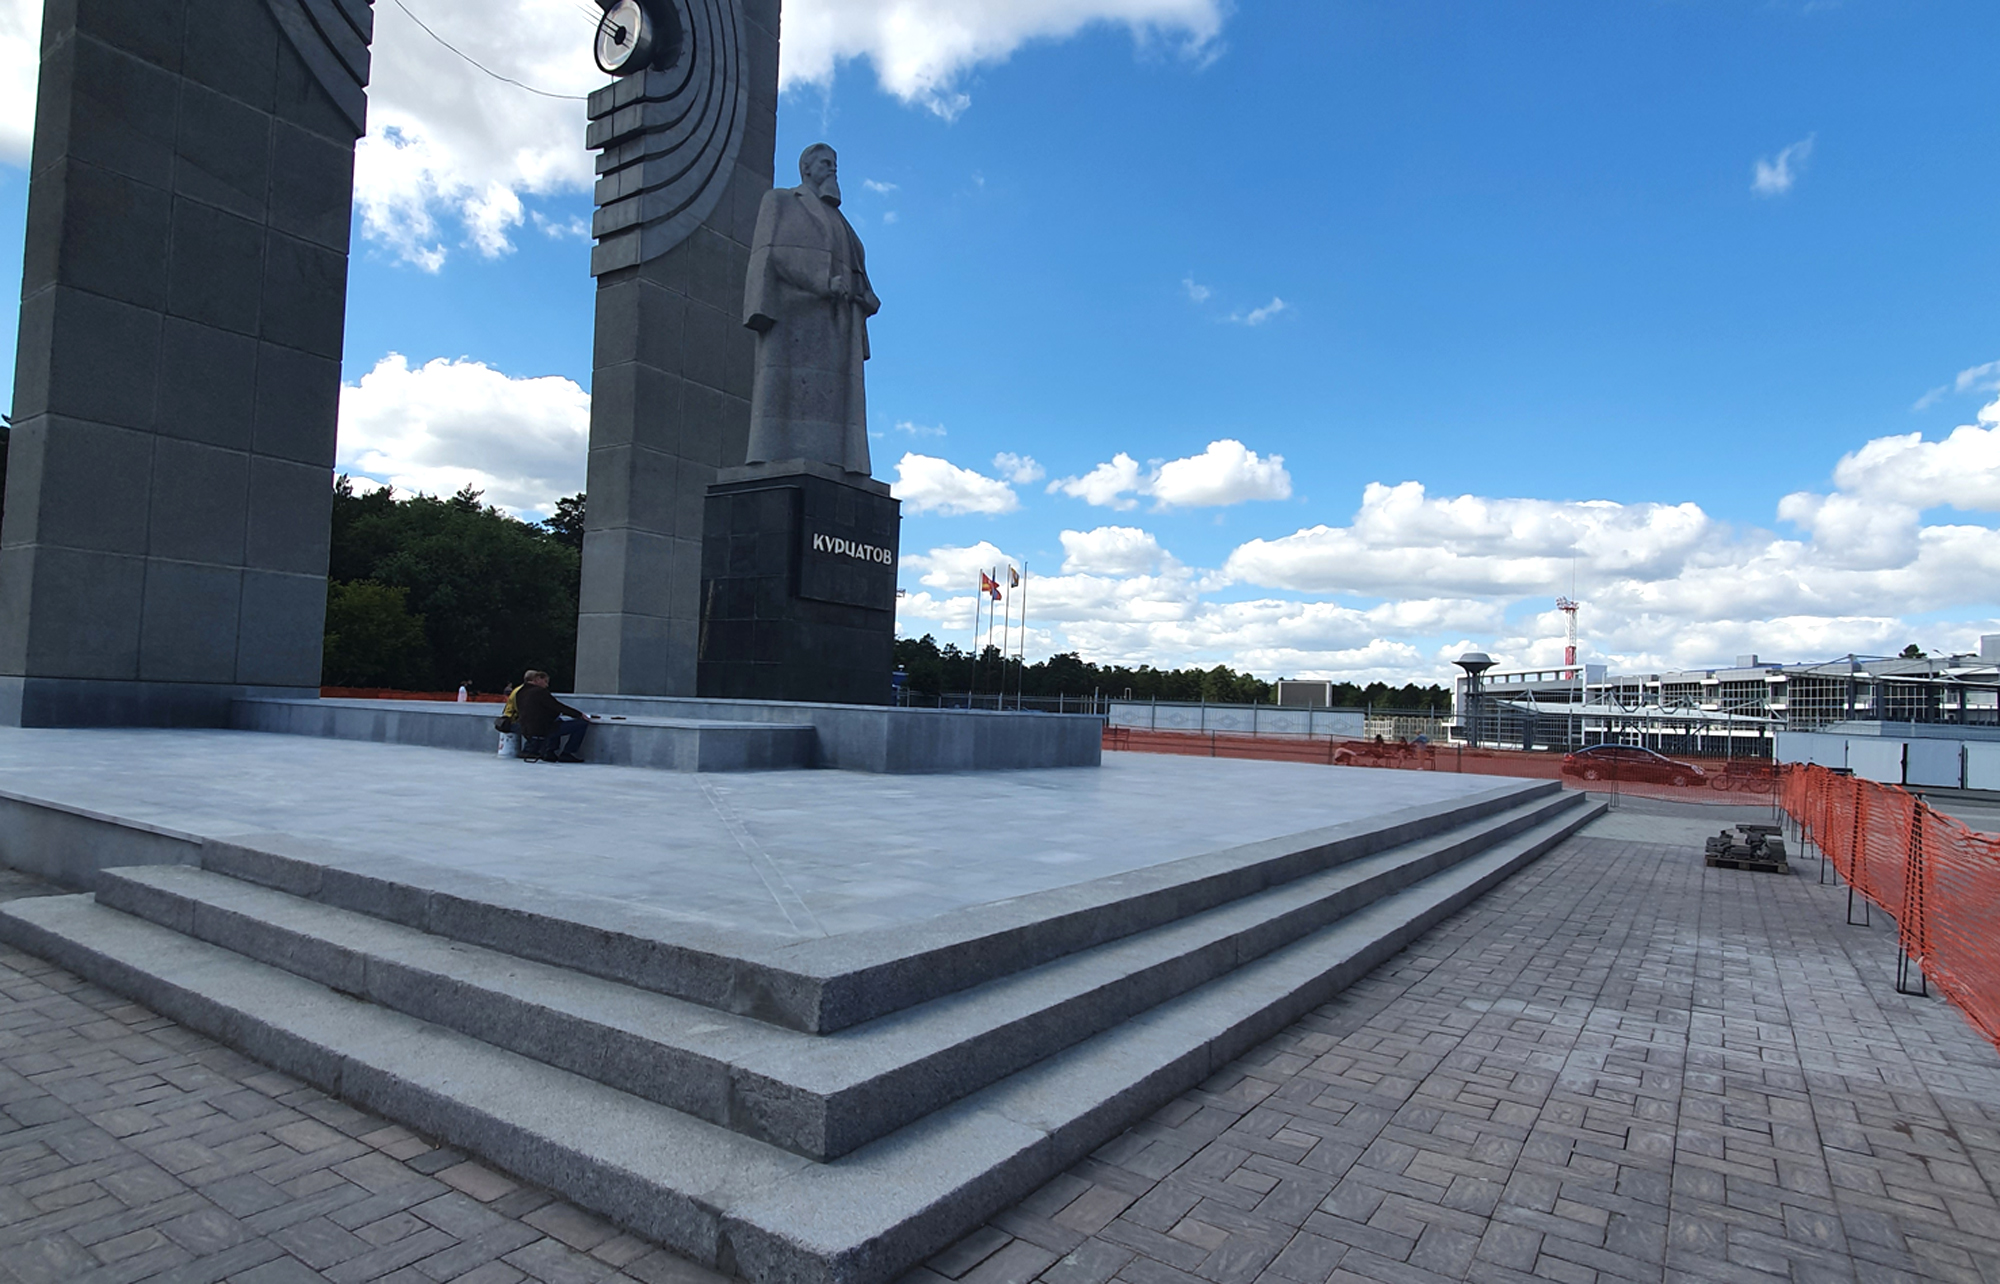 Реставрация Памятника "Курчатов" апрель-август 2020 г.